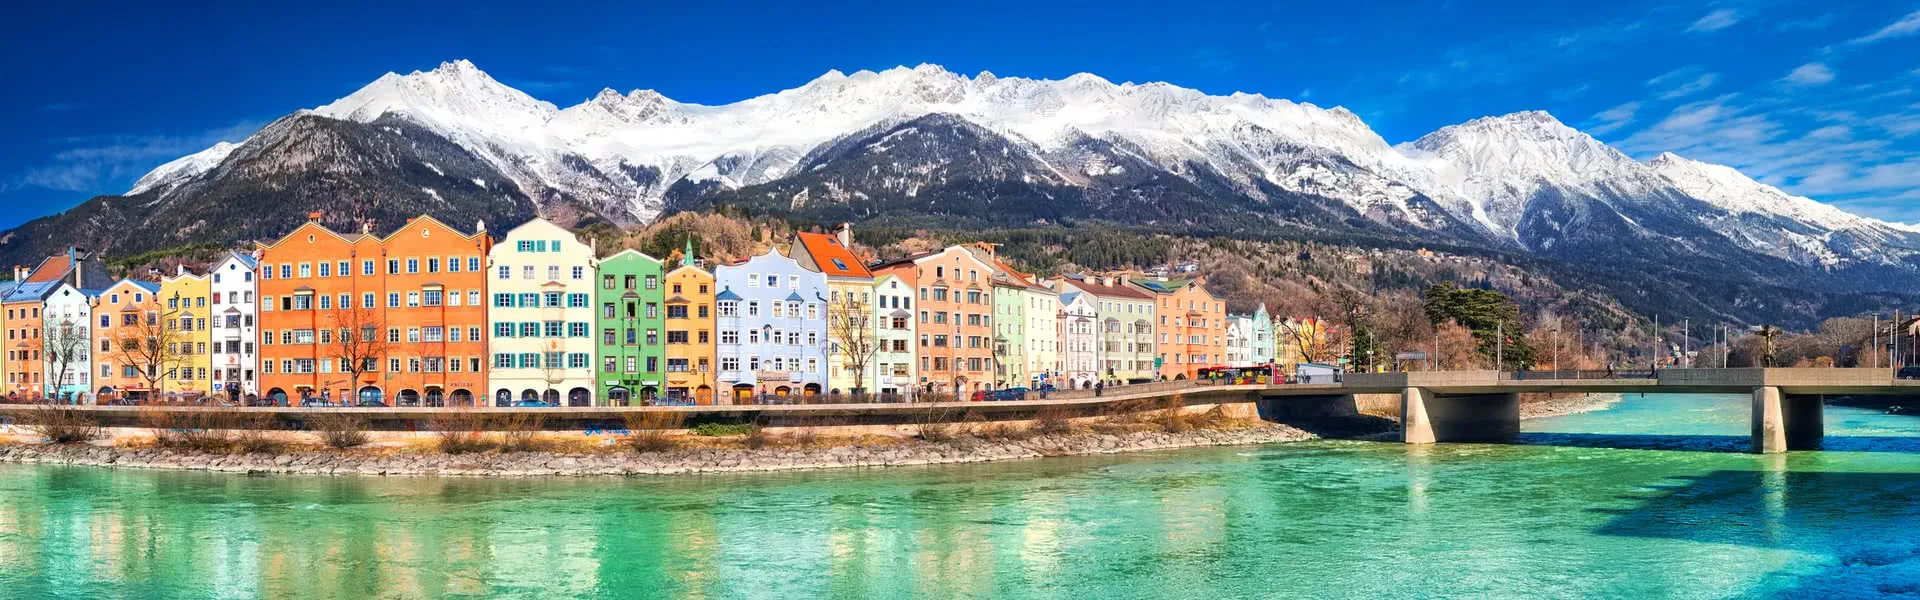 Innsbruck - das Reiseziel mit Jugendherbergen